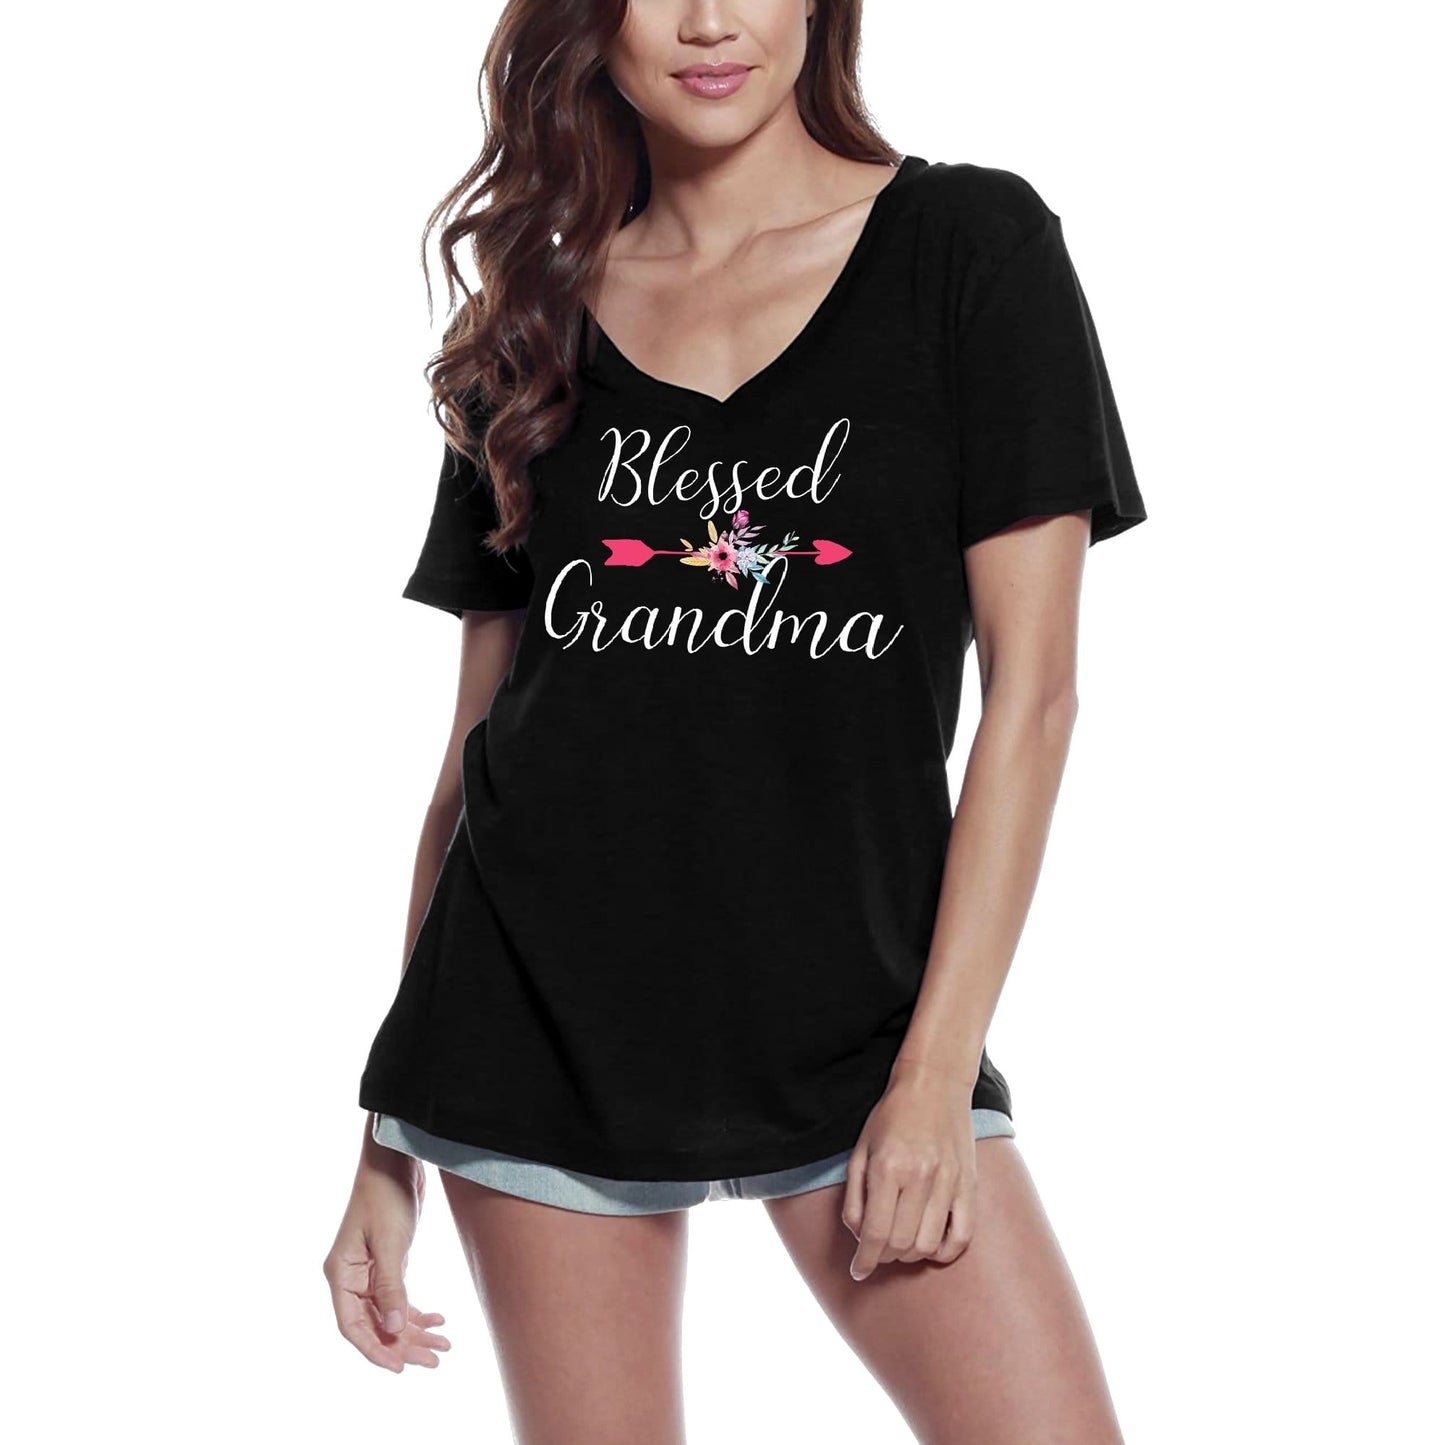 ULTRABASIC Women's V-Neck T-Shirt Blessed Grandma - Granny Nana Tee Shirt